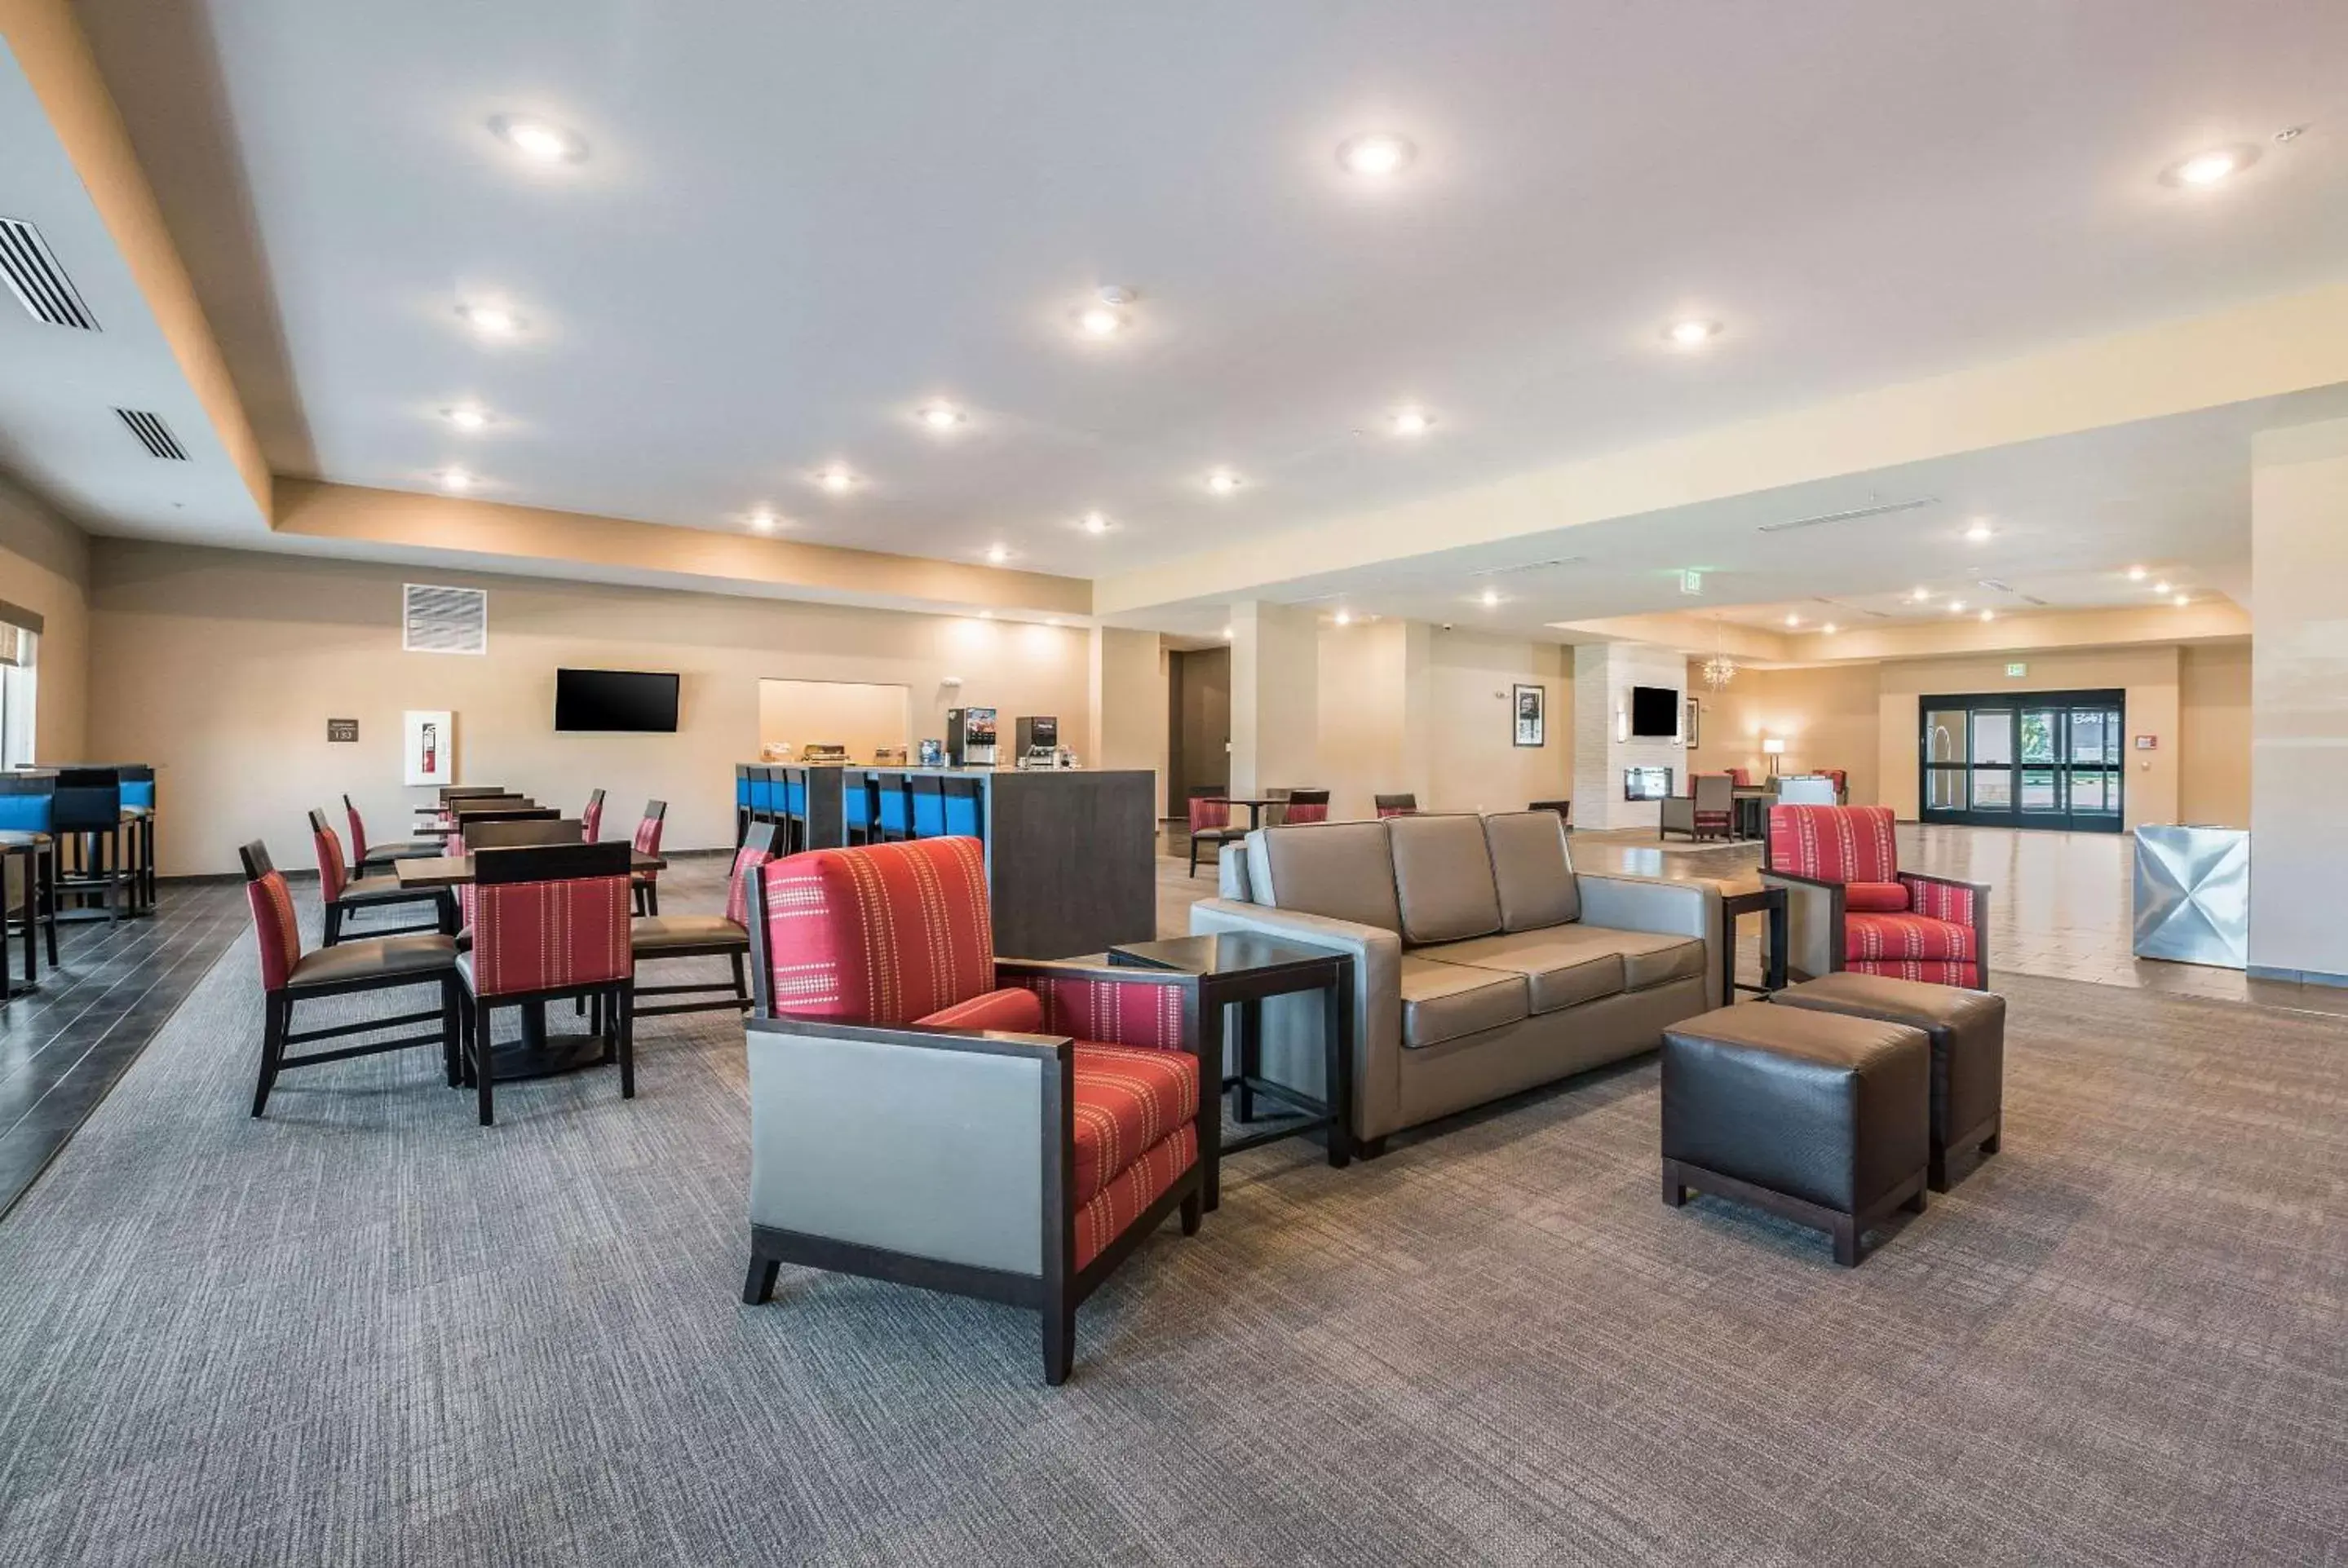 Lobby or reception in Comfort Suites Marysville Columbus - Northwest